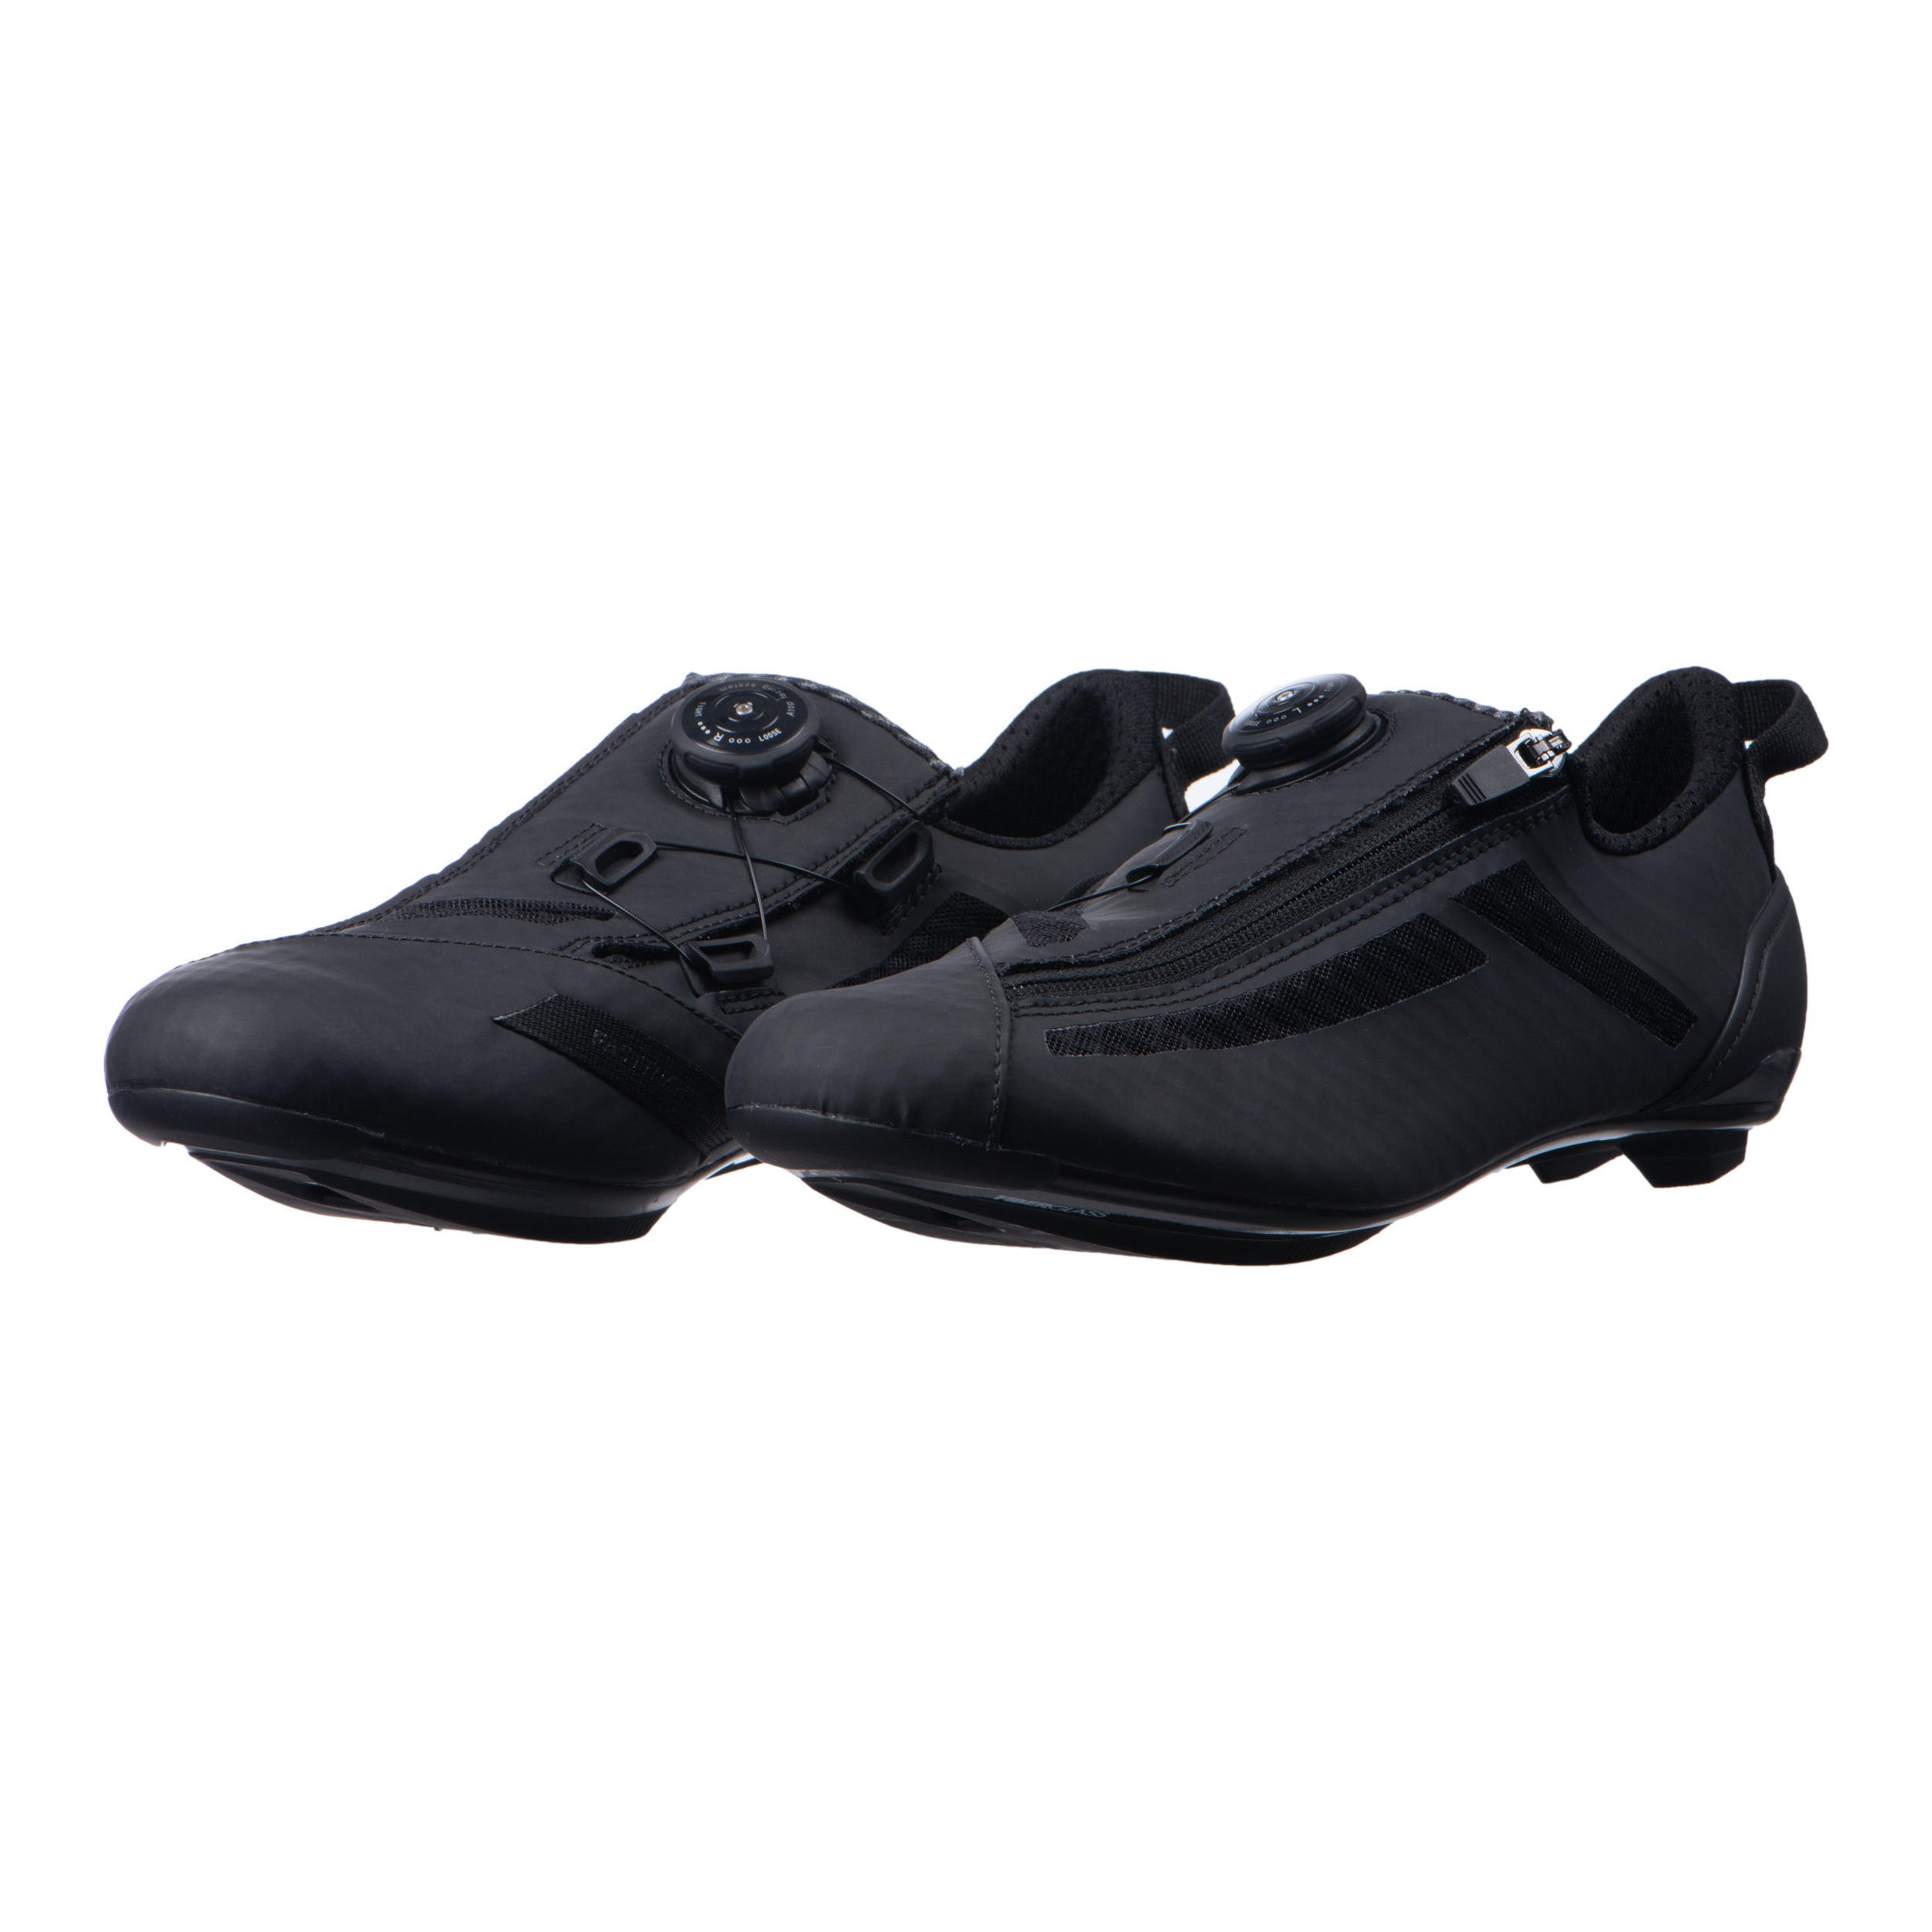 Aptonia Triathlon Cycling Shoes - Black 2/8